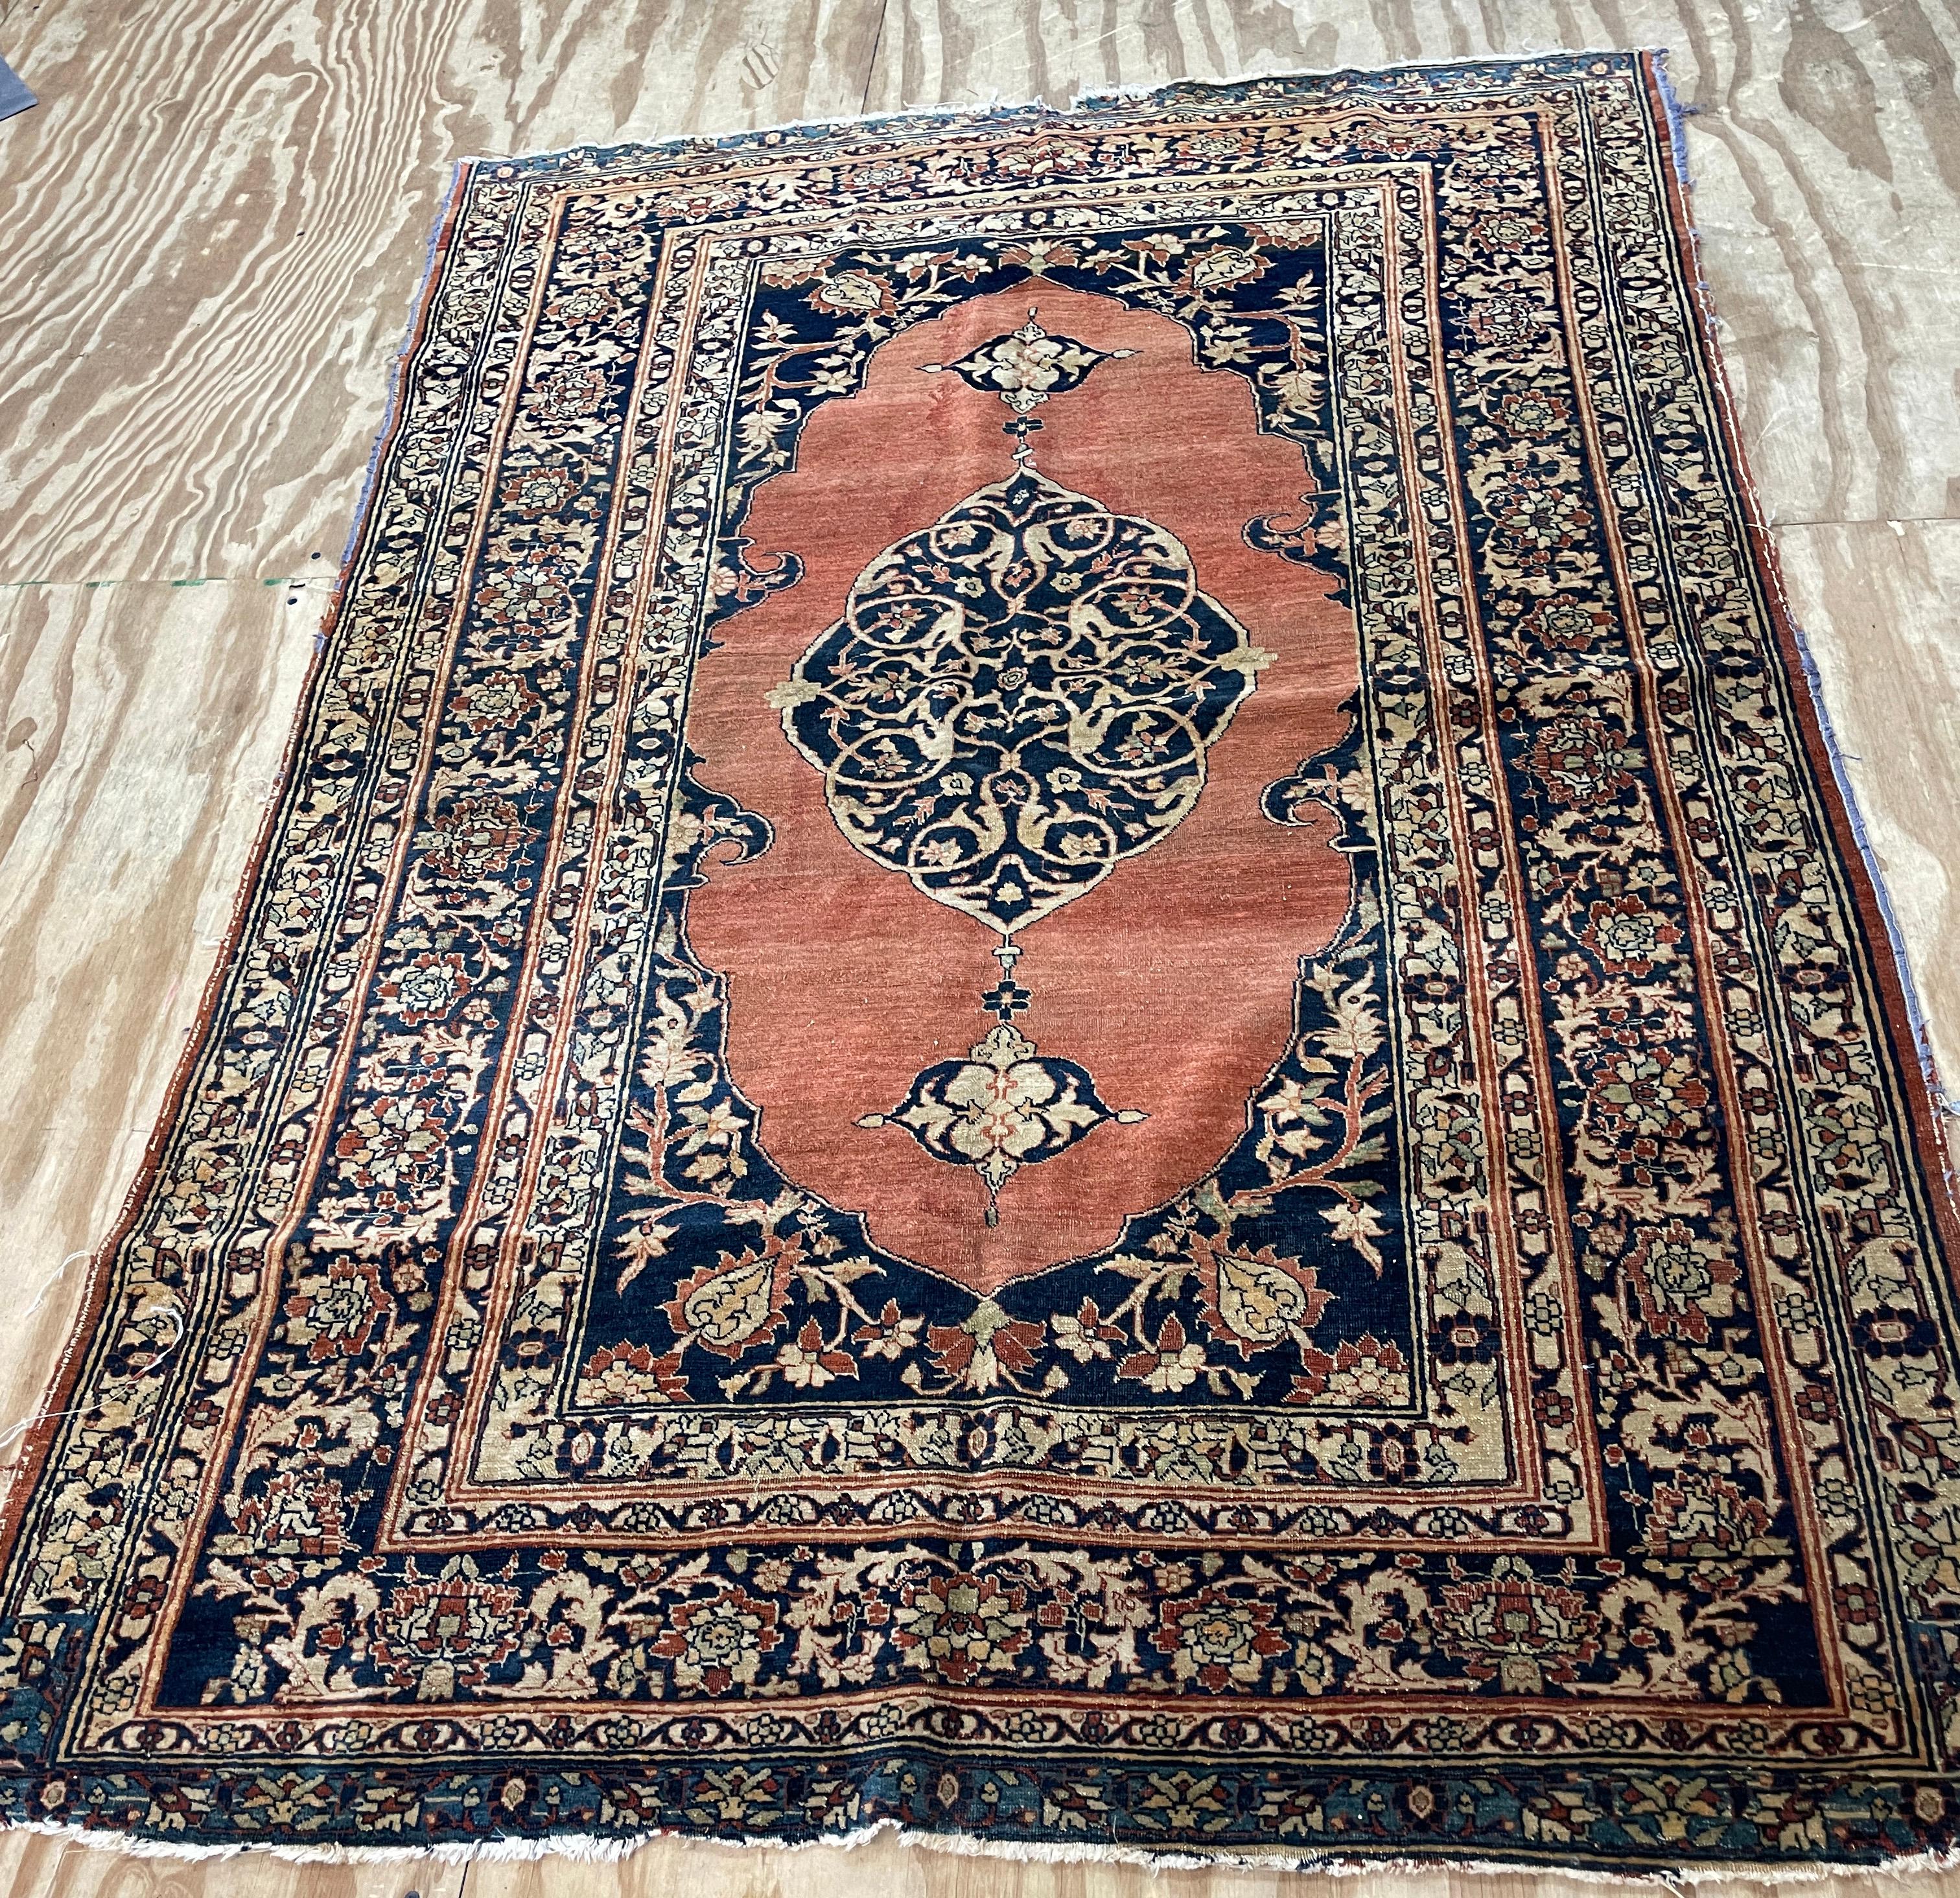 Wir stellen Ihnen den exquisiten Sarouk Feraghan vor, einen zeitlosen Teppich aus den späten 1880er Jahren, der sich in einem bemerkenswert guten Zustand befindet.

Dieser Teppich wurde in und um die malerische Region Arak im Nordwesten Irans gewebt